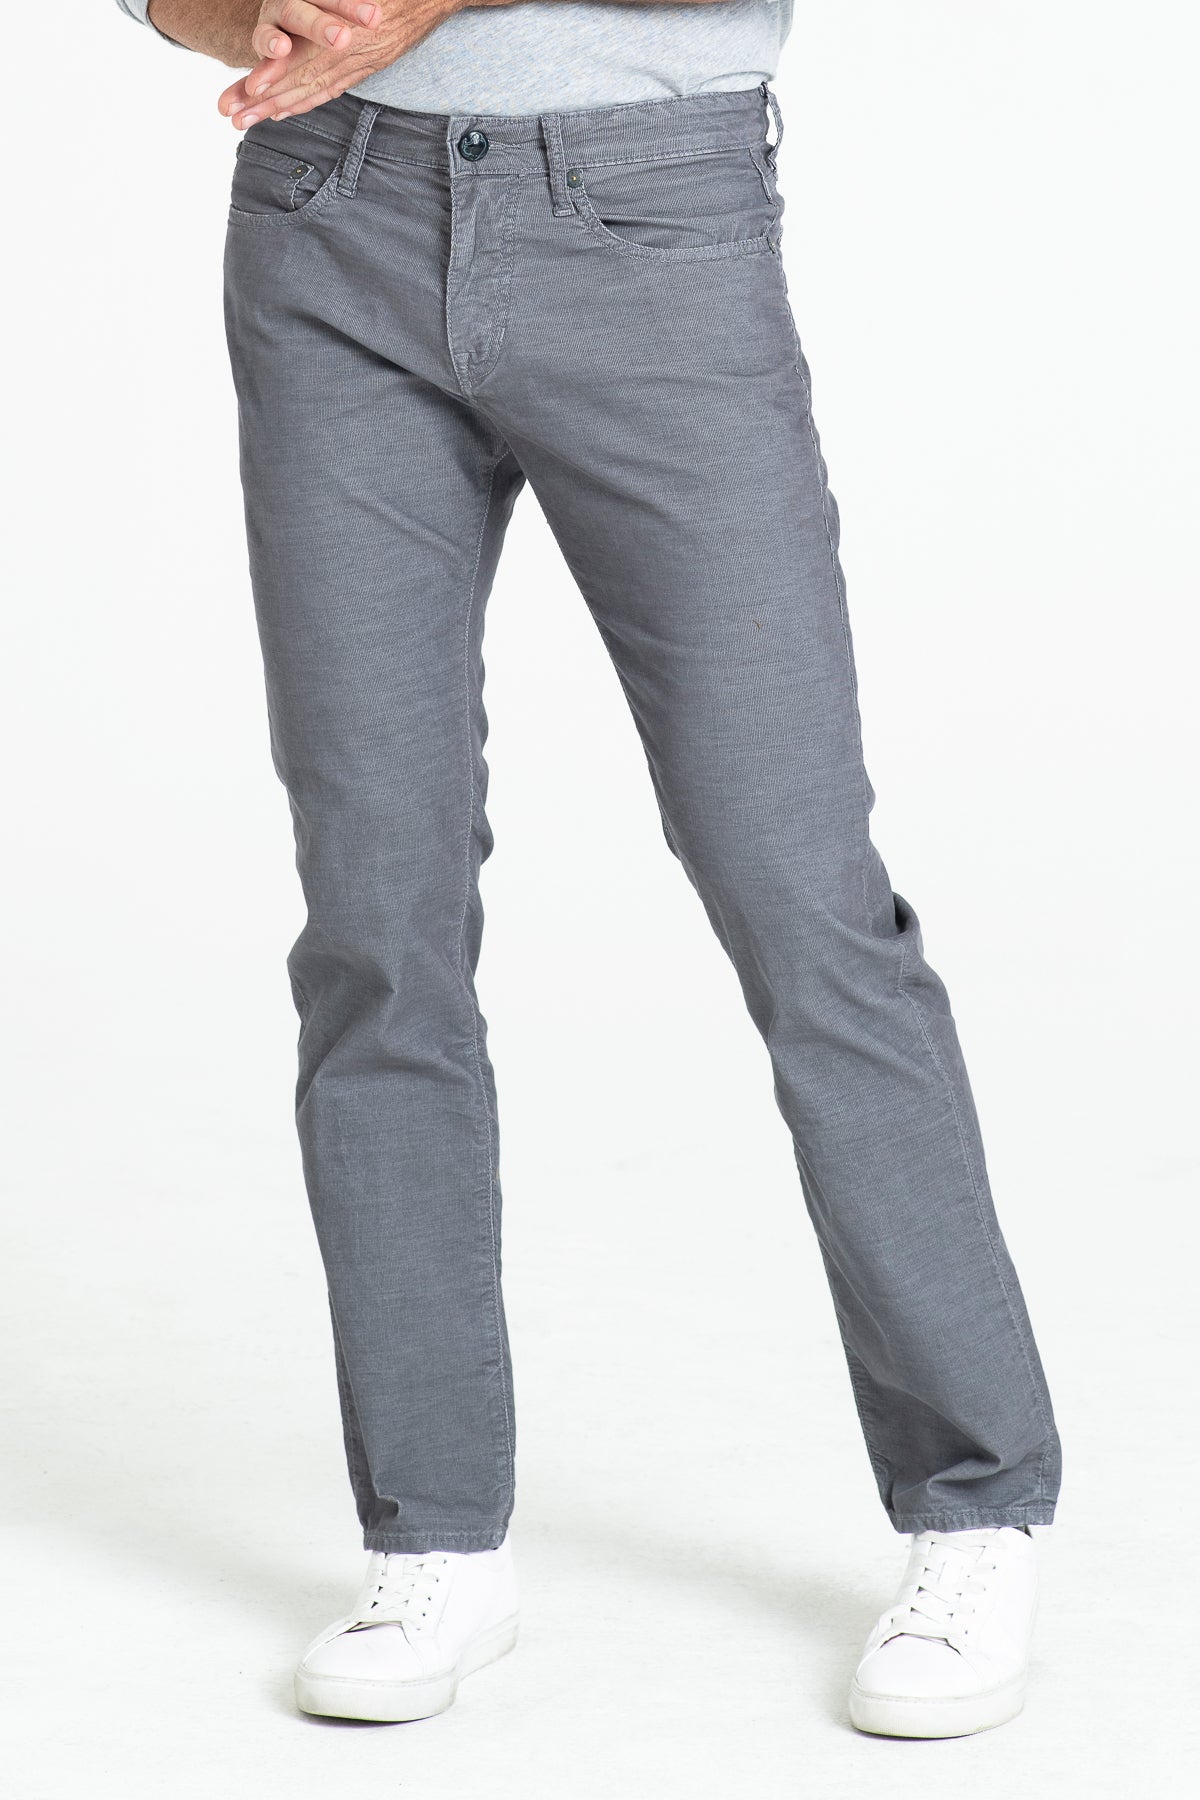 BARFLY SLIM CORDUROY IN IRON – Stitch's Jeans